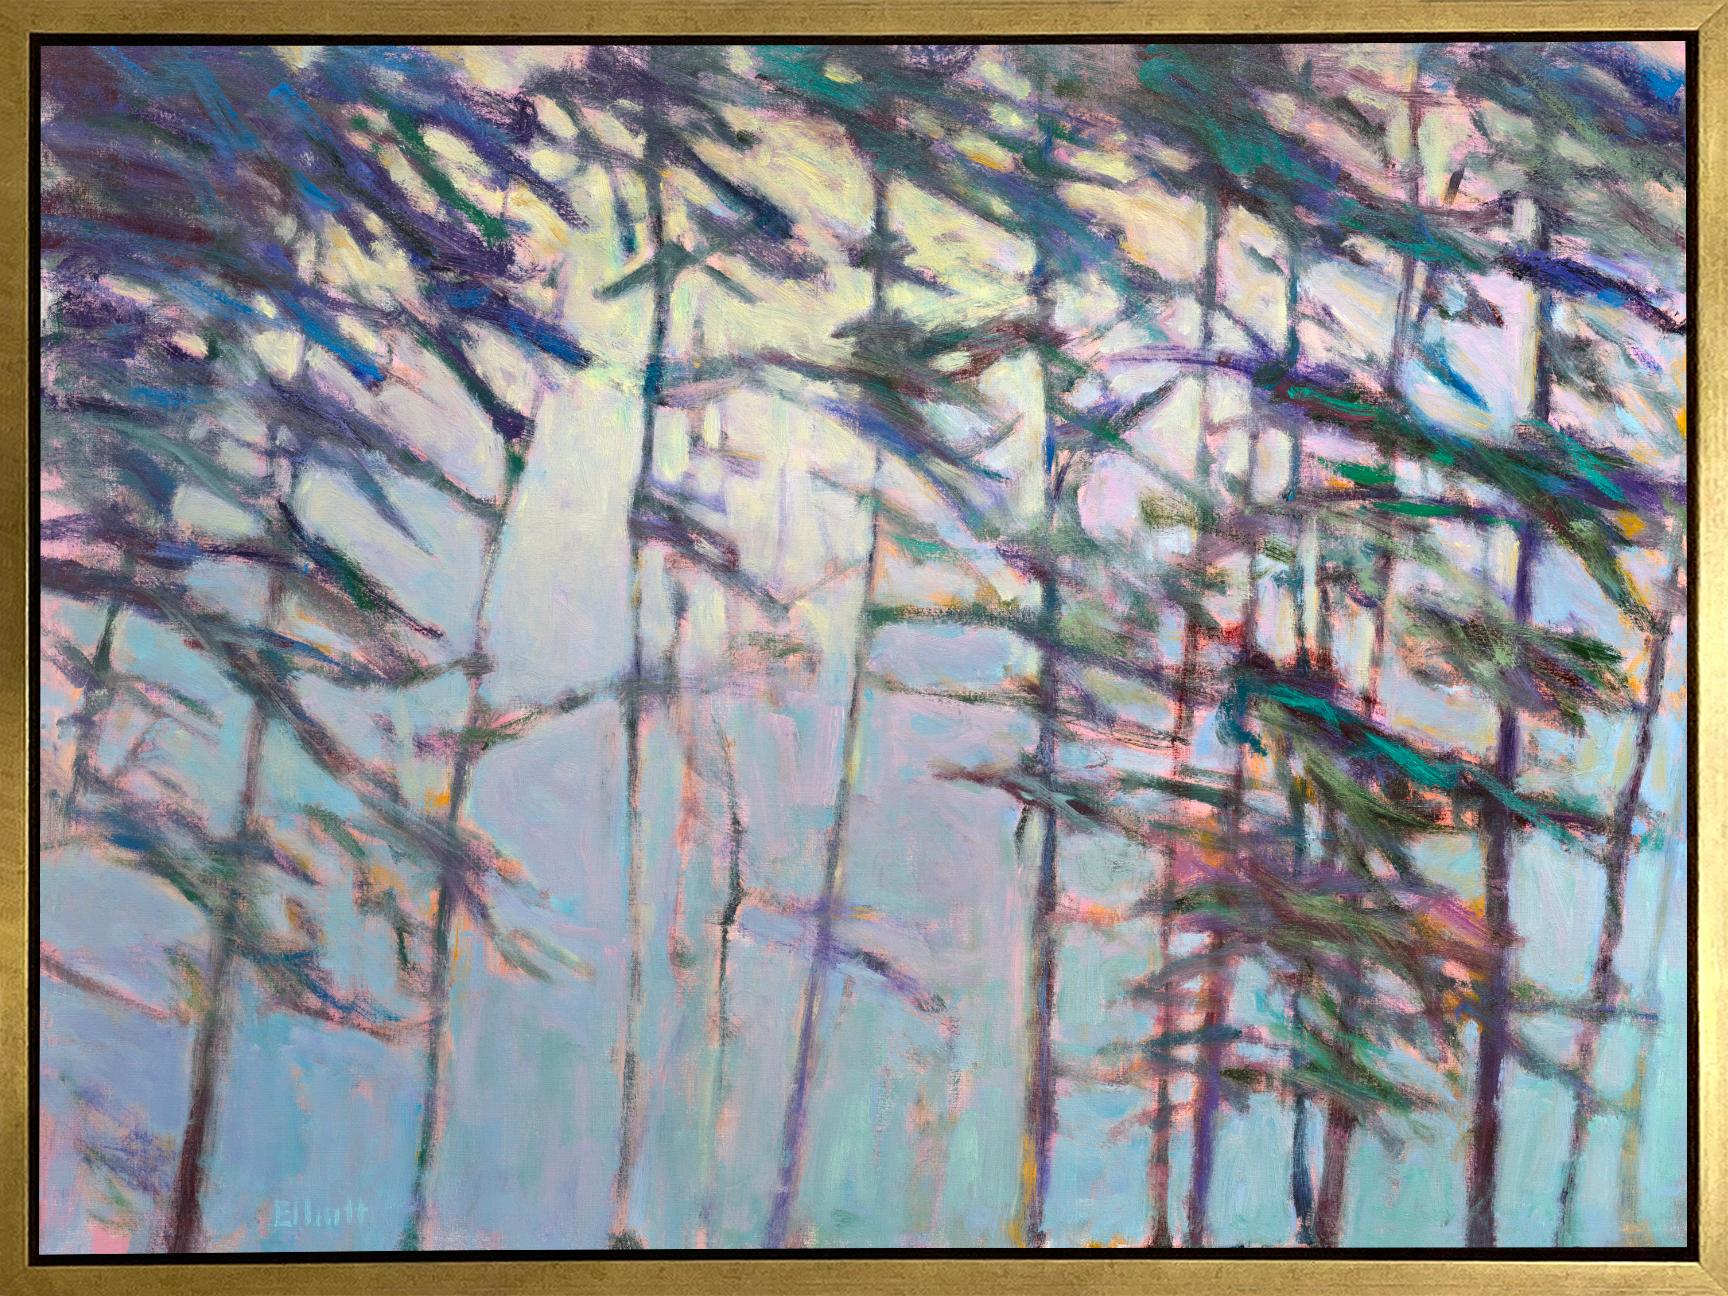 Landscape Print Ken Elliott - ""Light Emerging - Diffused Blue", Impression giclée en édition limitée, 36"" x 48""